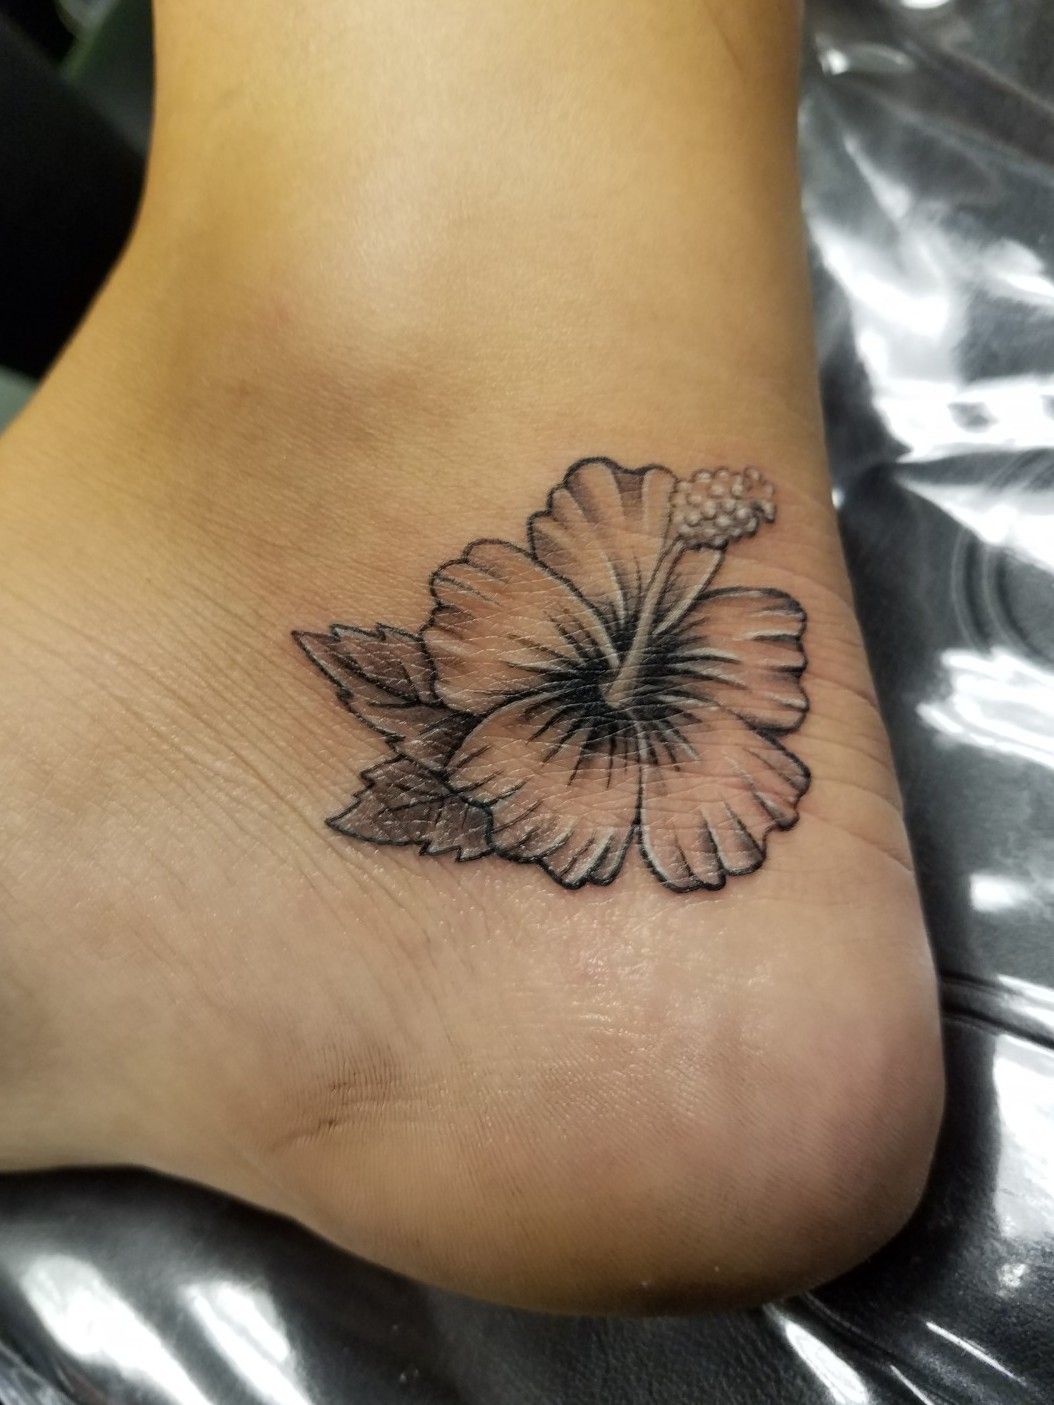 Top 61 Best Hawaiian Flower Tattoo Ideas  2021 Inspiration Guide